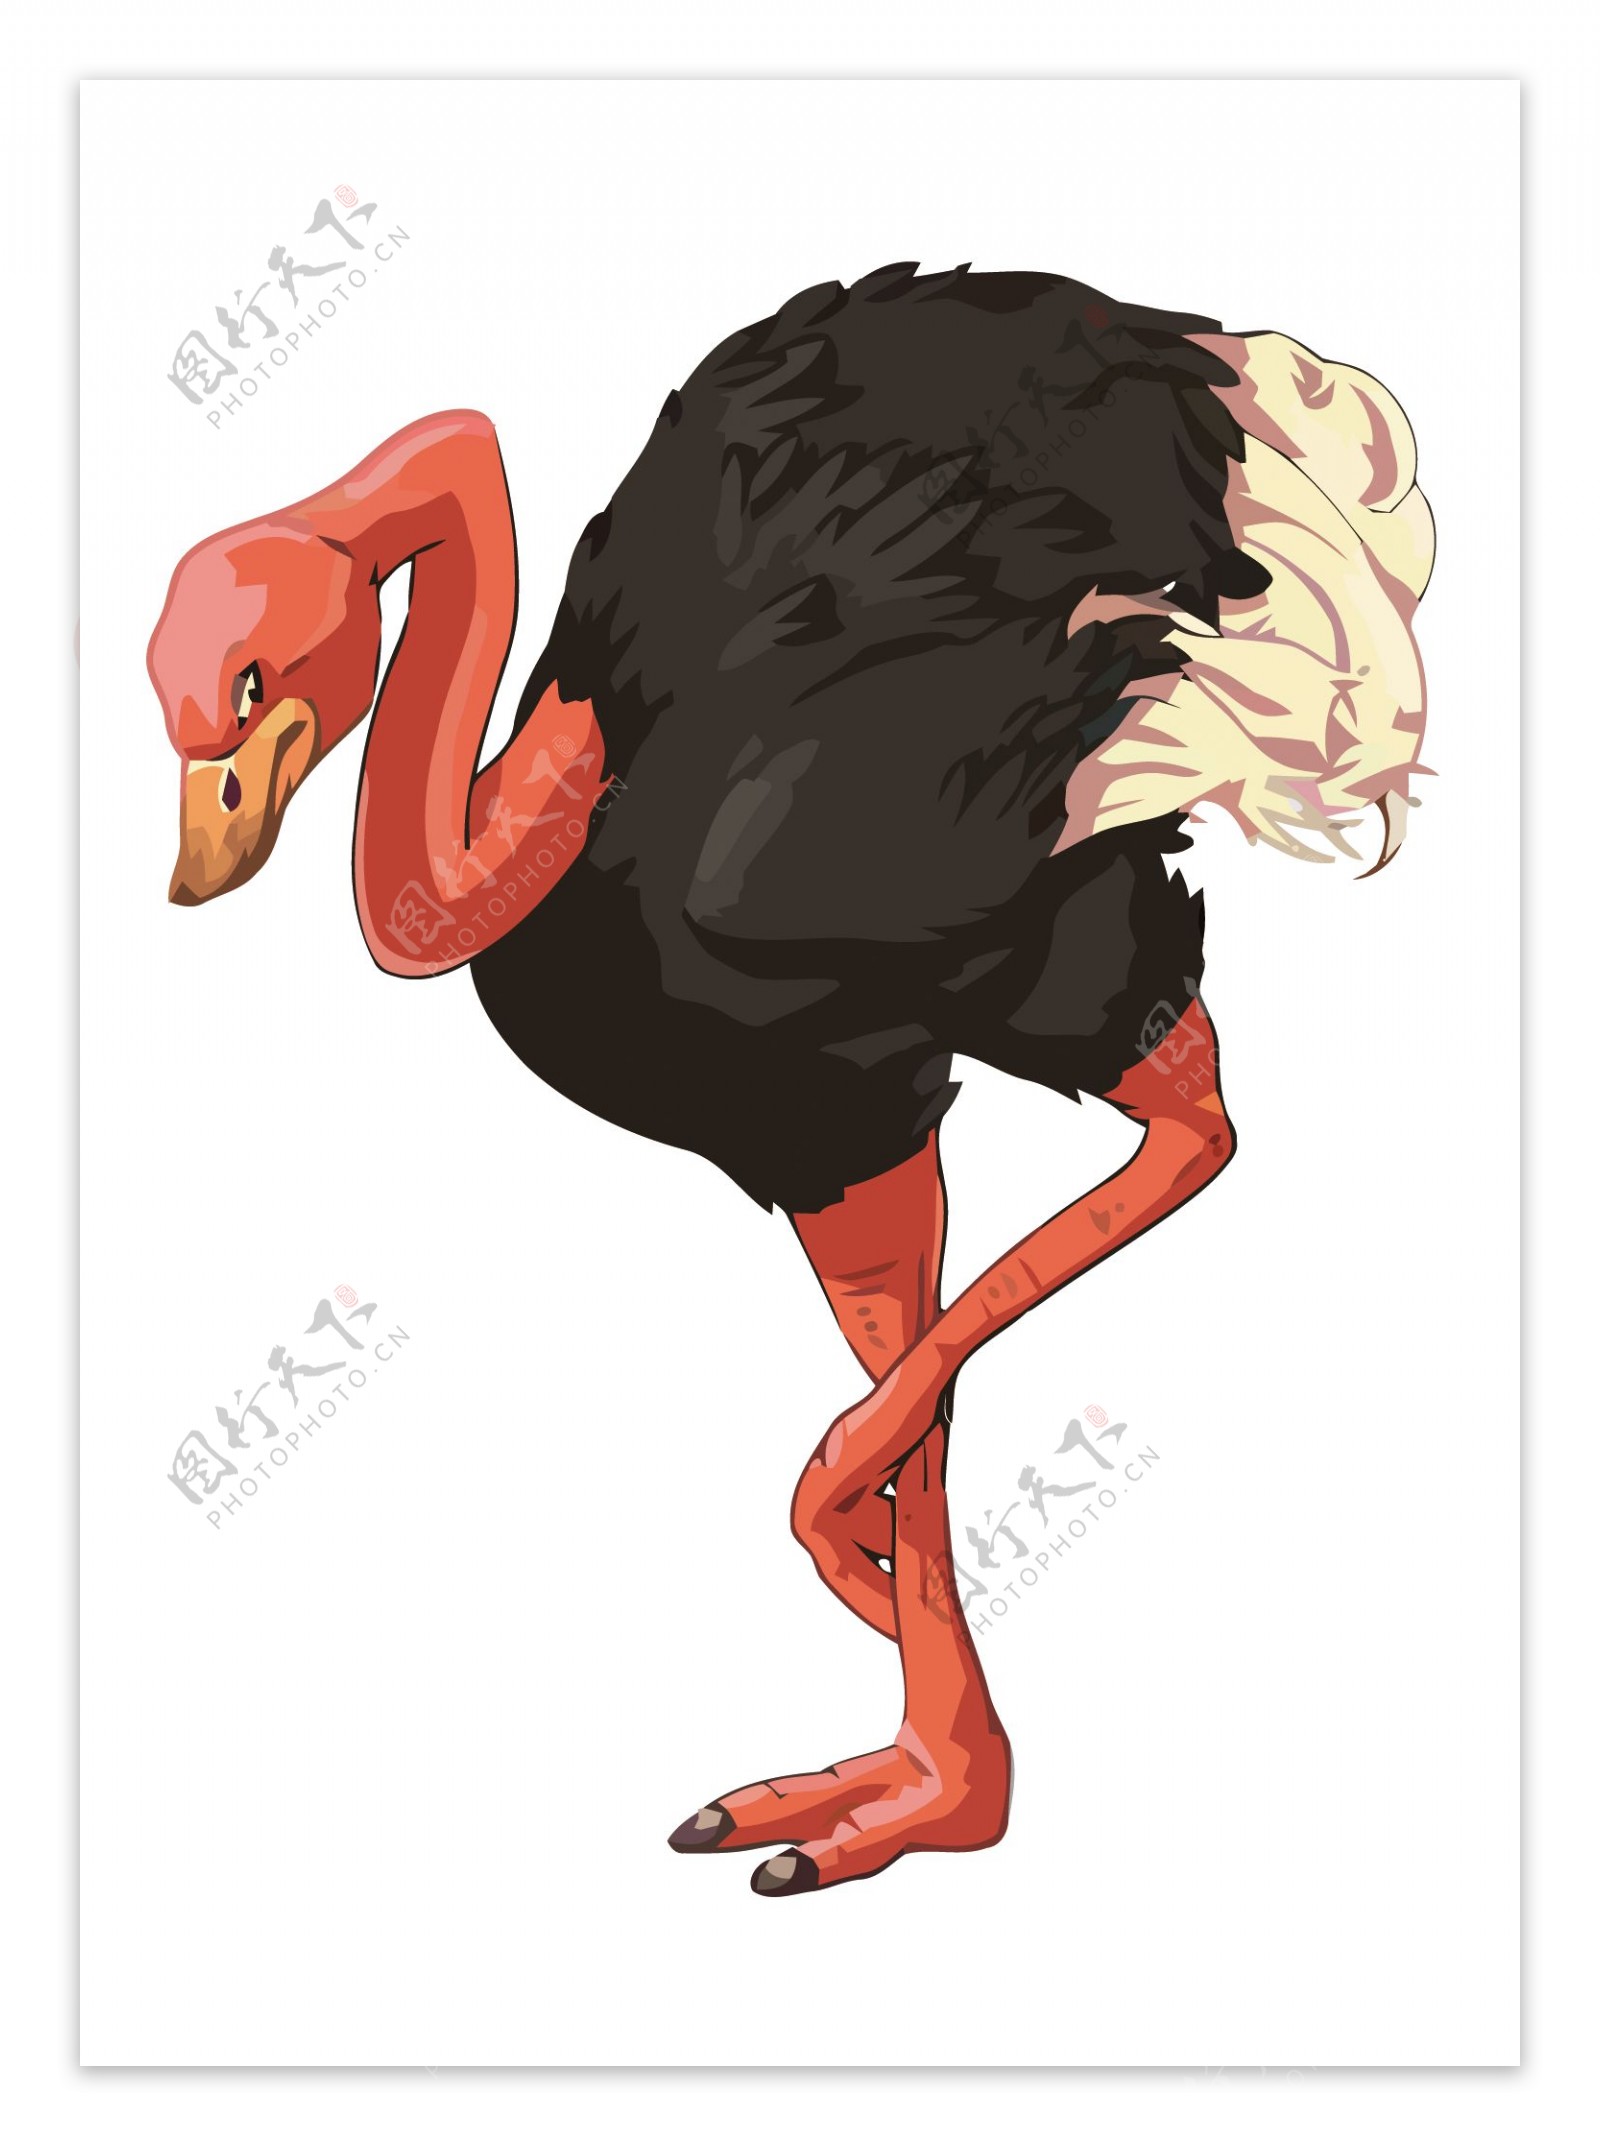 卡通动物鸵鸟造型形象png图片